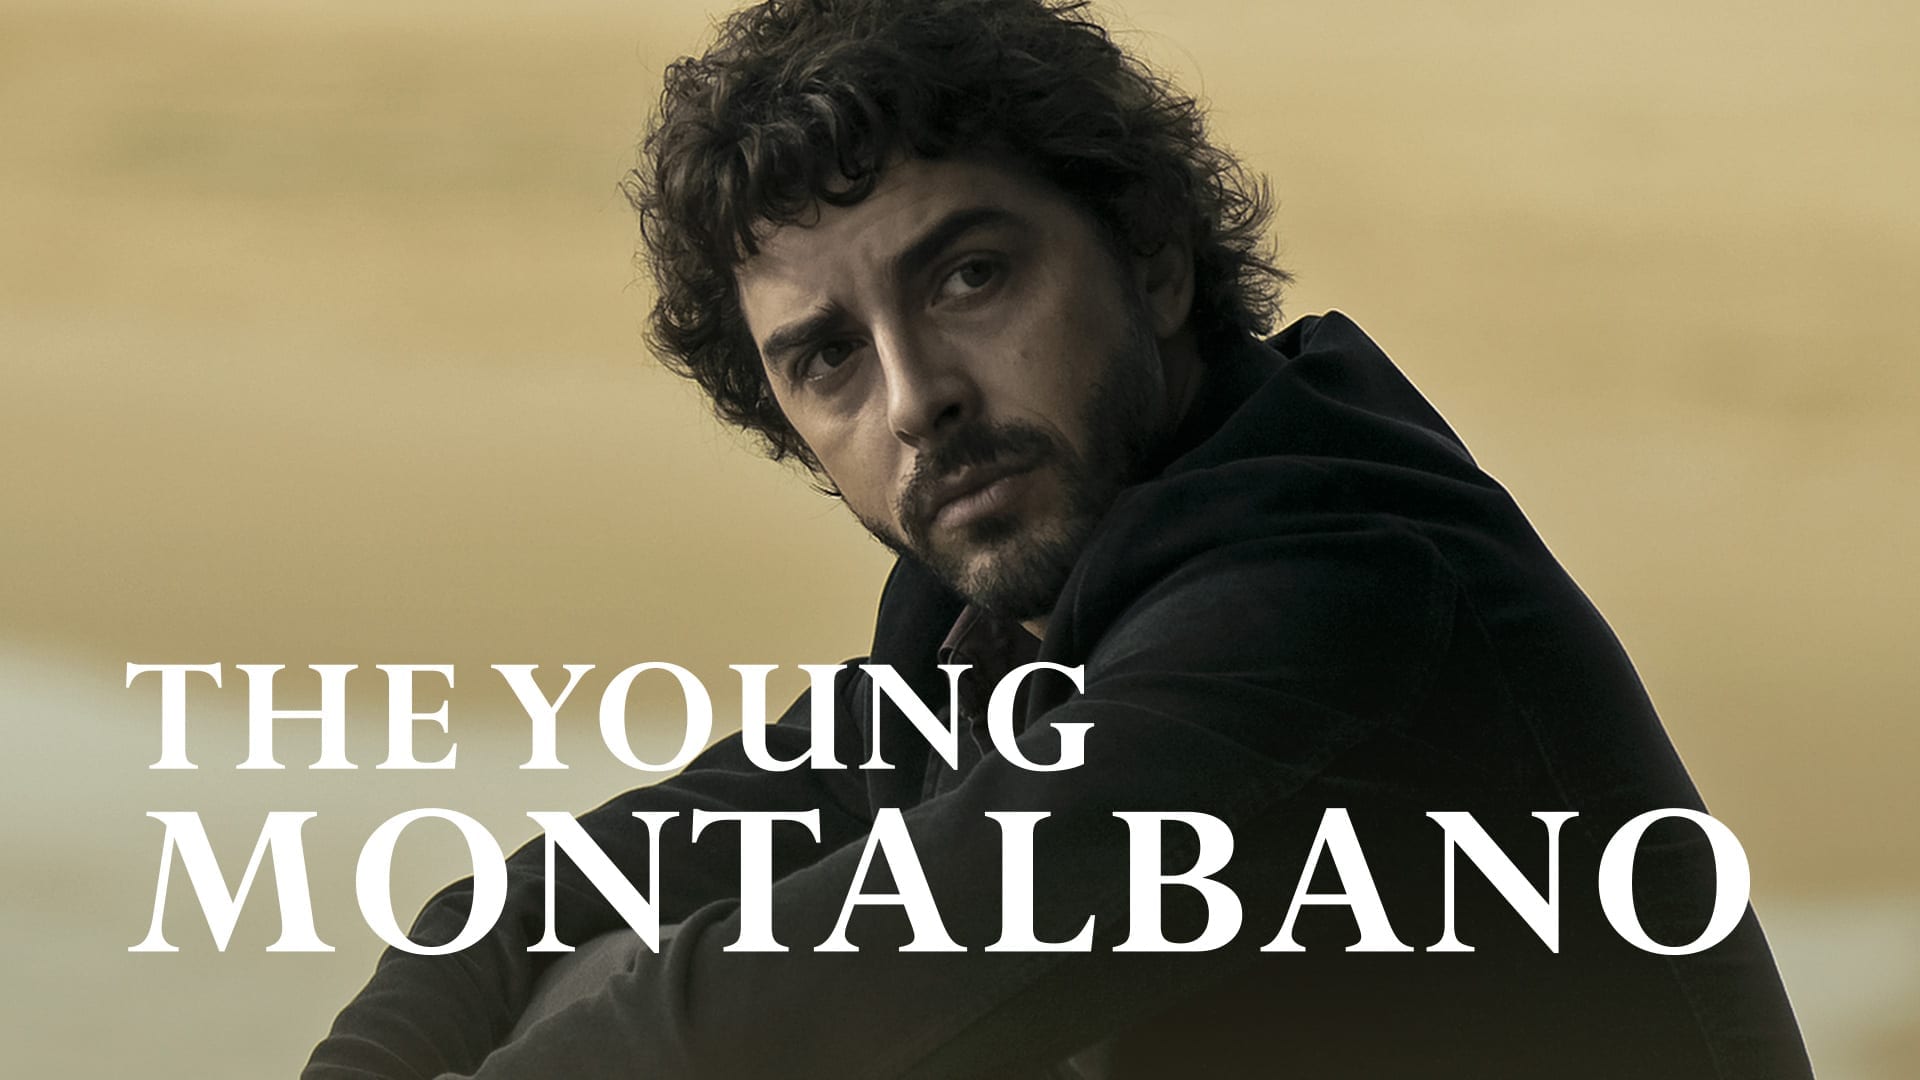 the young montalbano vimeo ott series banner 1920x1080 1